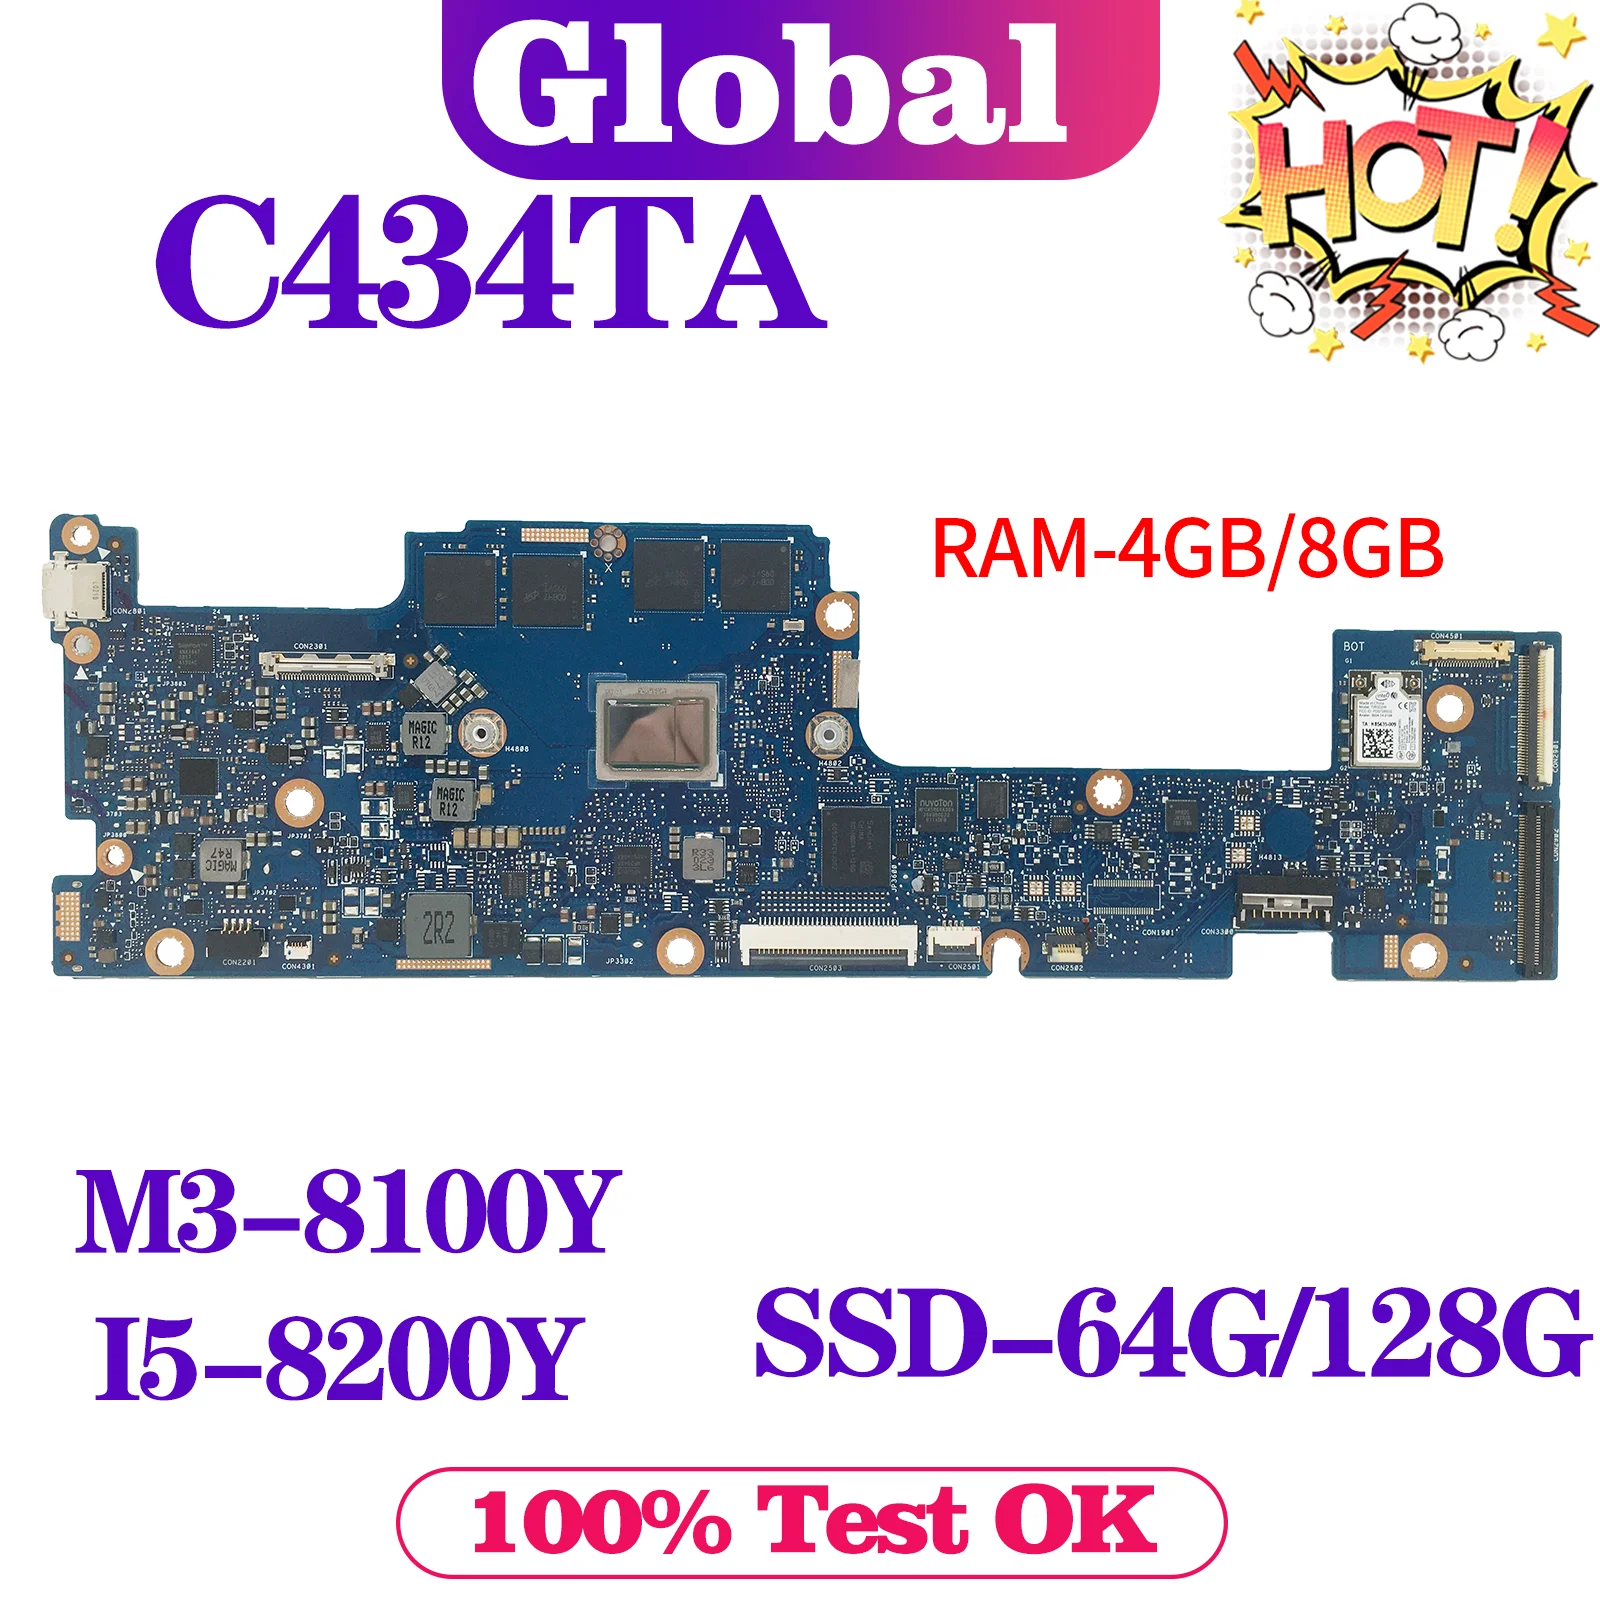 

KEFU C434T Mainboard For ASUS Chromebook Flip C434 C434TA Laptop Motherboard M3-8100Y I5-8200Y 8GB/4GB-RAM SSD-64G/128G